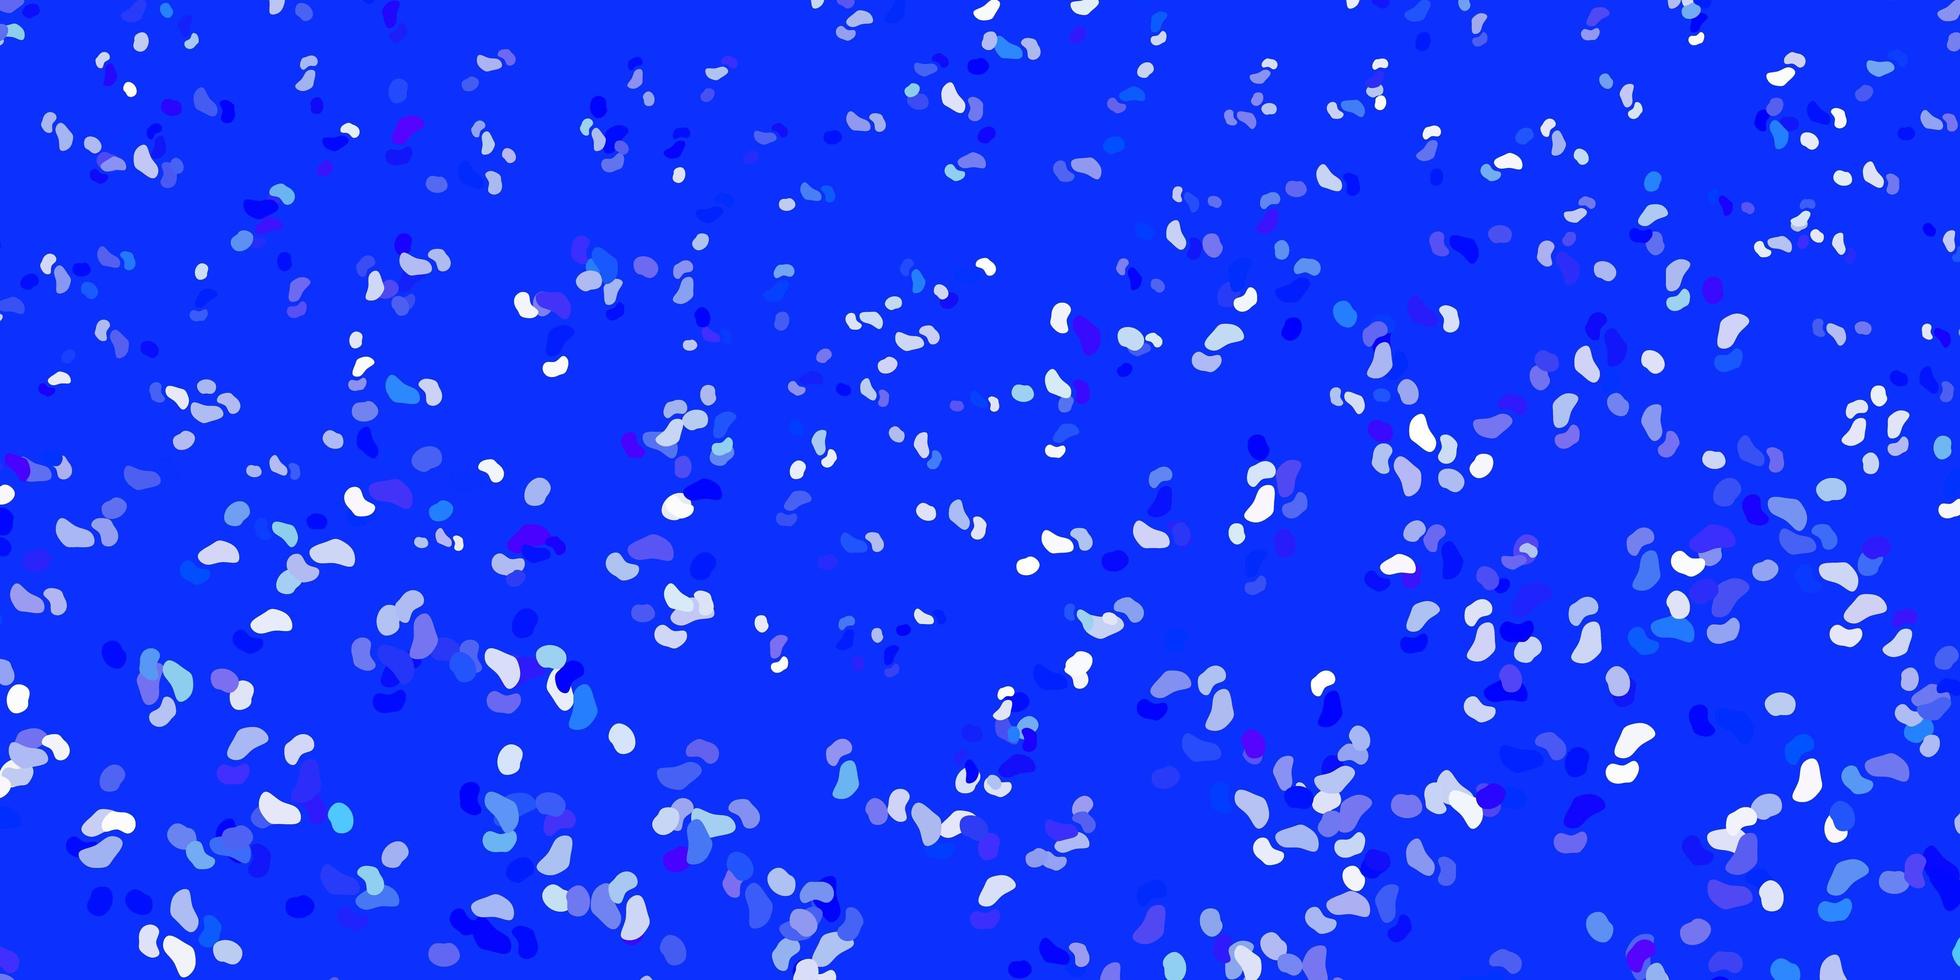 lichtblauw vector sjabloon met abstracte vormen.